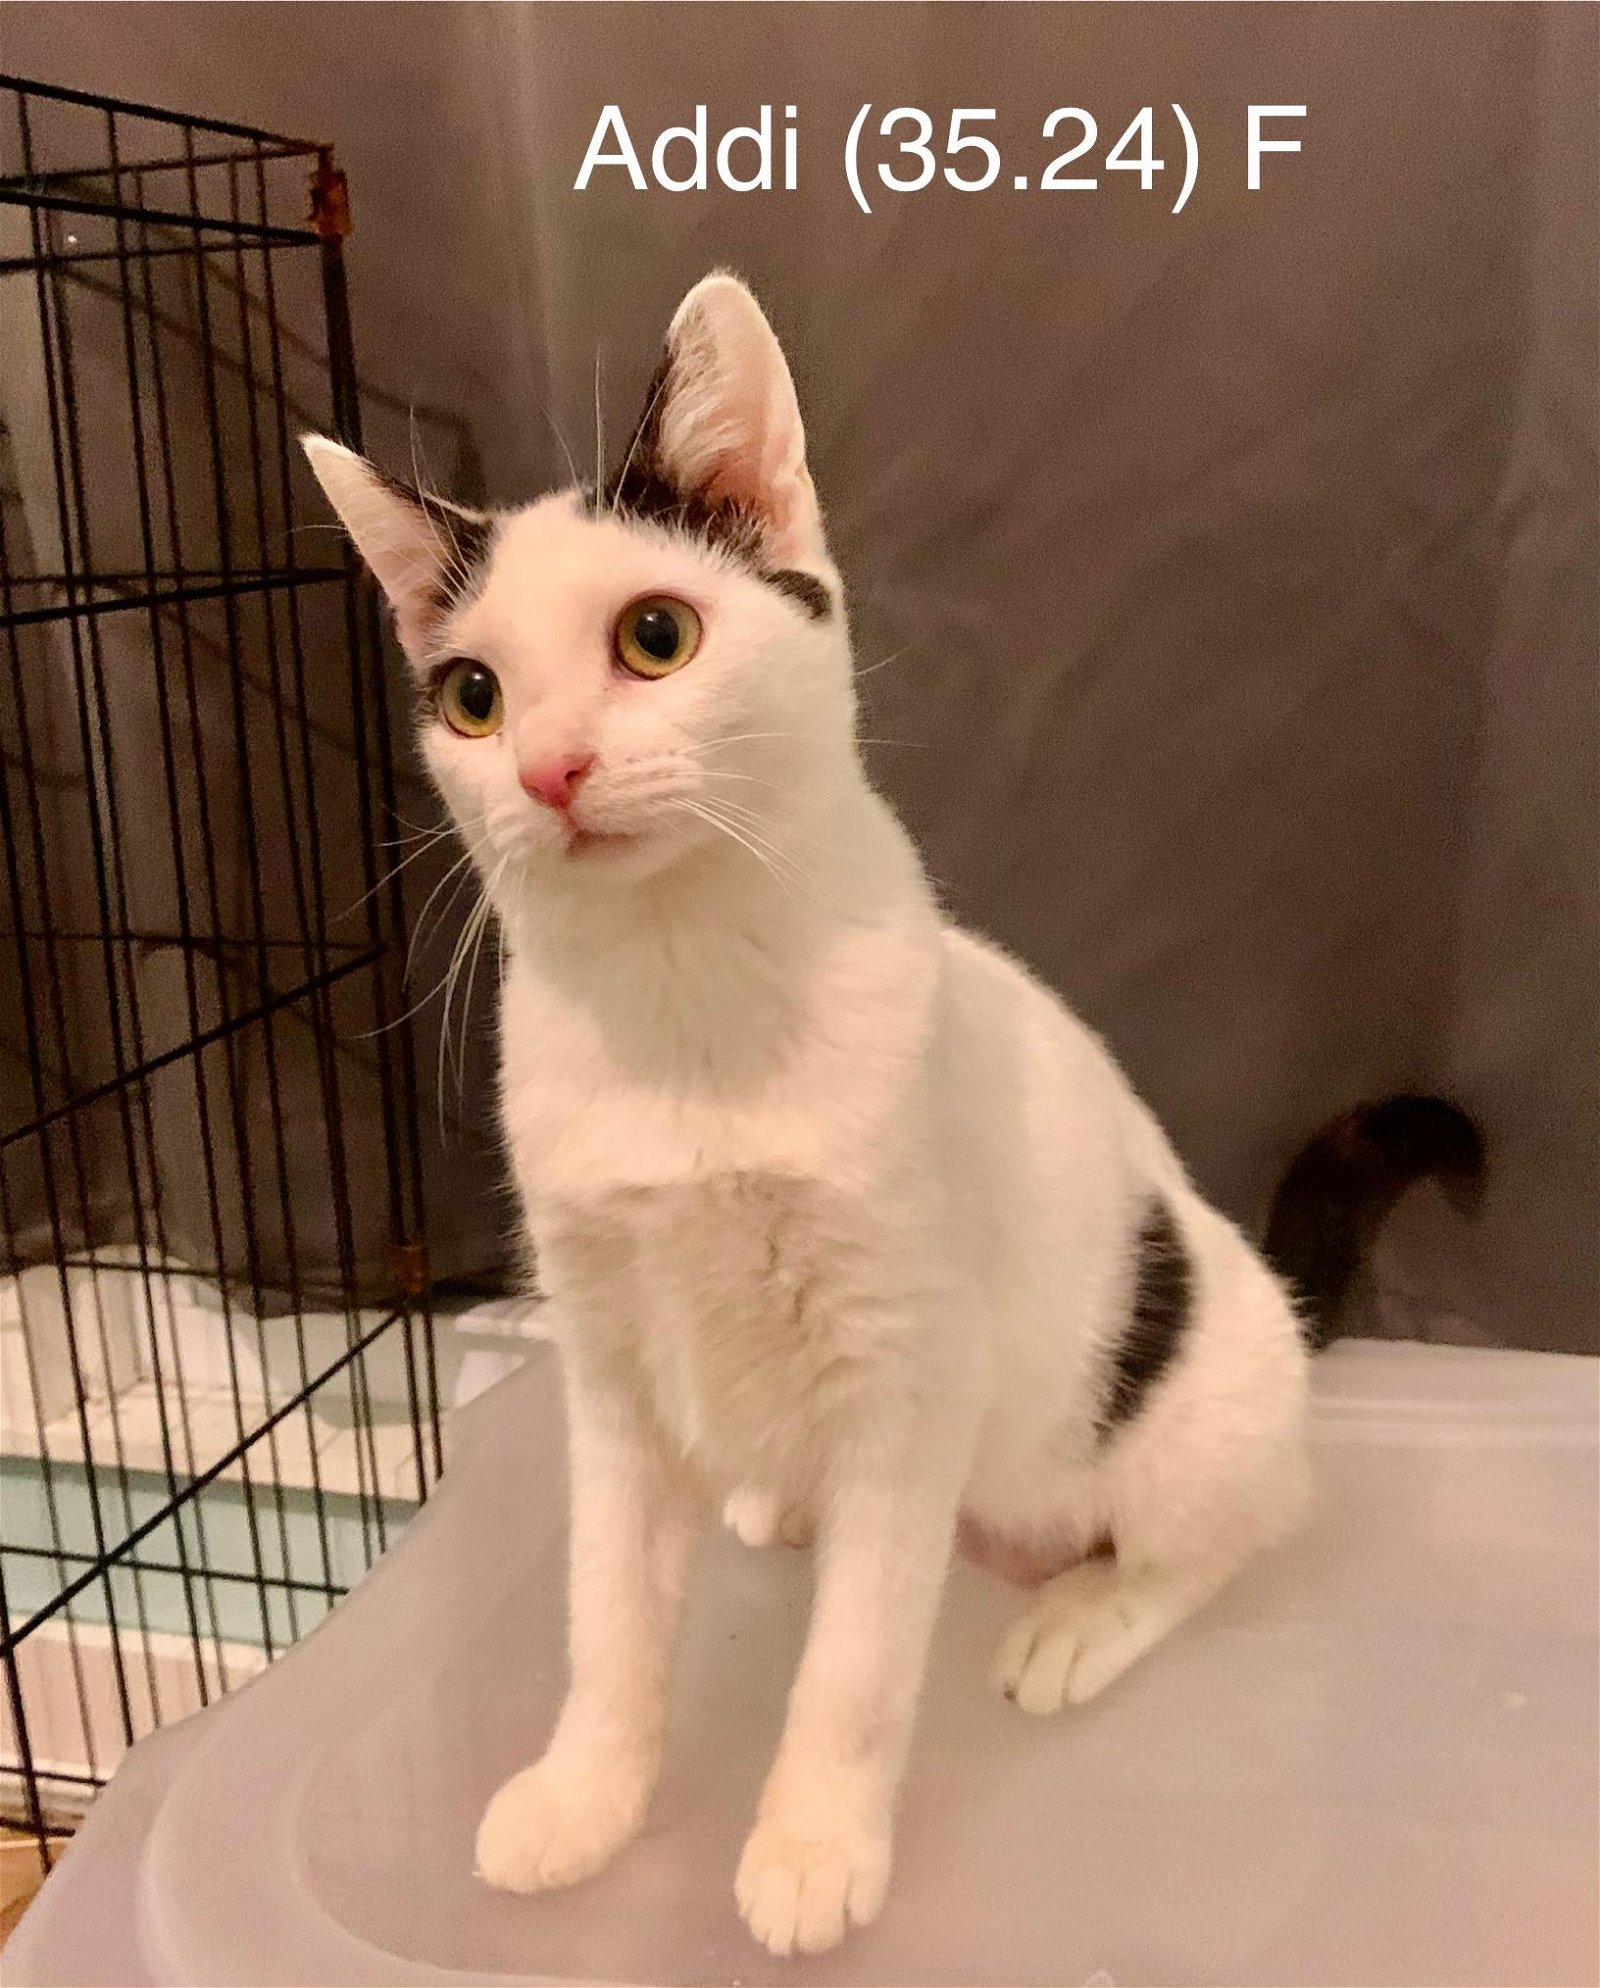 adoptable Cat in Batavia, NY named Foster Addi